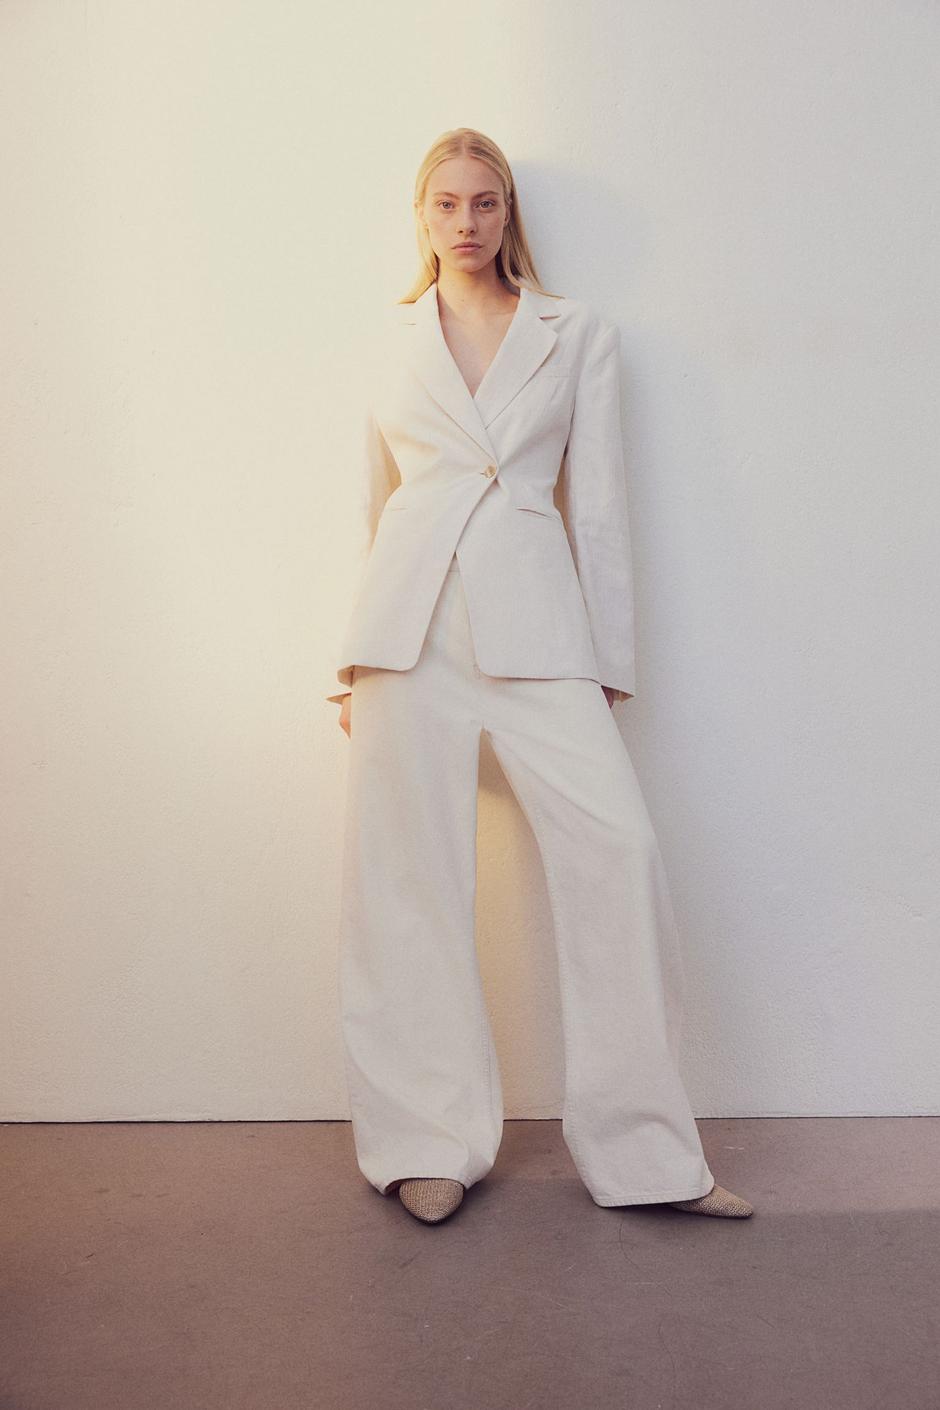 Foto: H&M, laneno bijelo odijelo (sako 49,99 eura i hlače 30,99 eura) | Autor: H&M